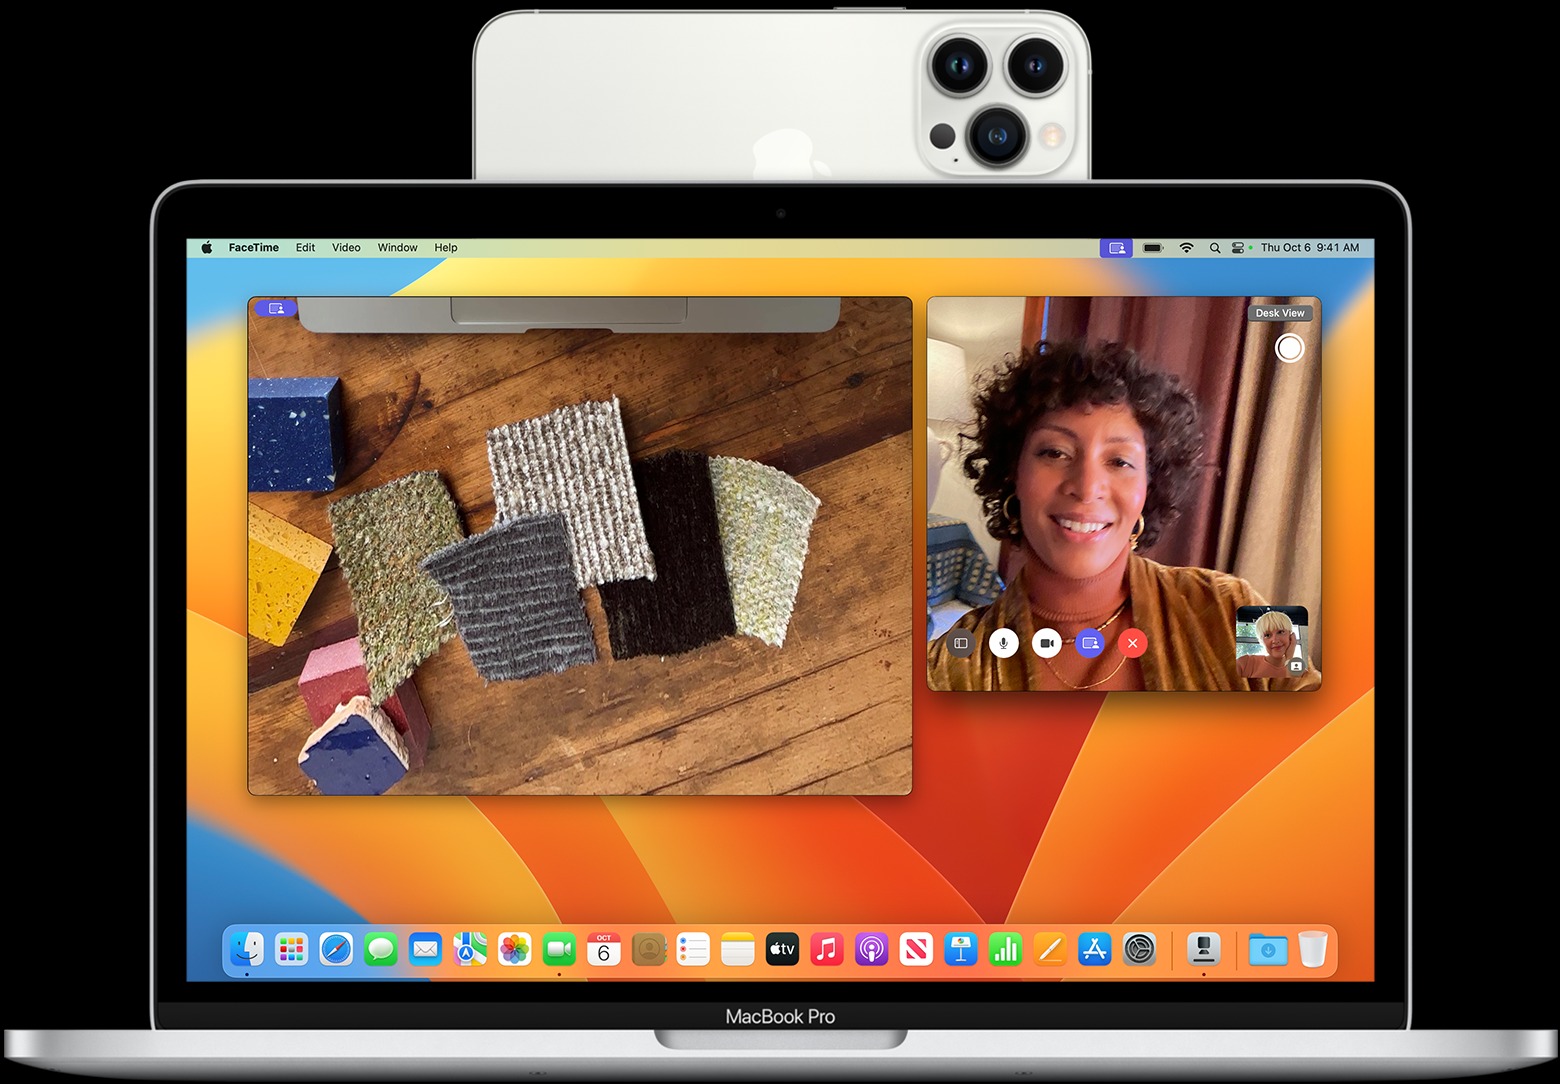 Continuity Camera, utilizando el iPhone como una webcam externa conectada inalámbricamente